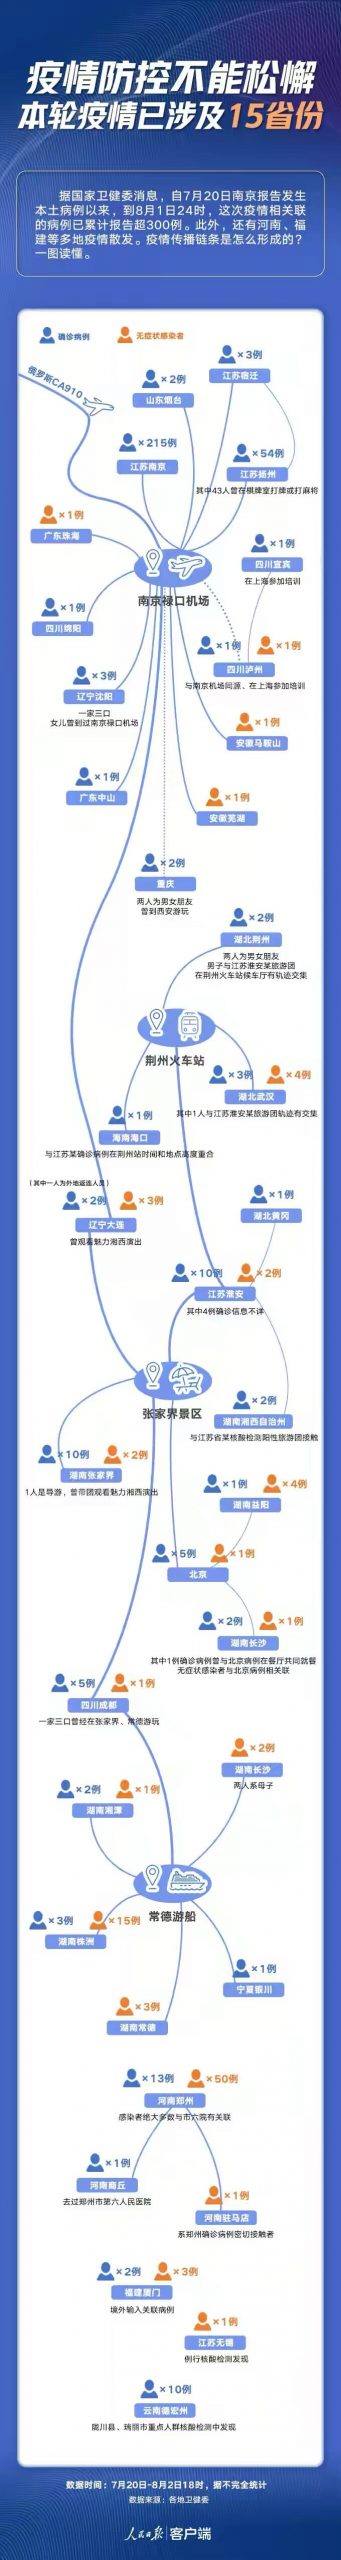 図１：「人民網」のアプリに見る南京禄口空港から発生したデルタ株感染者の動線